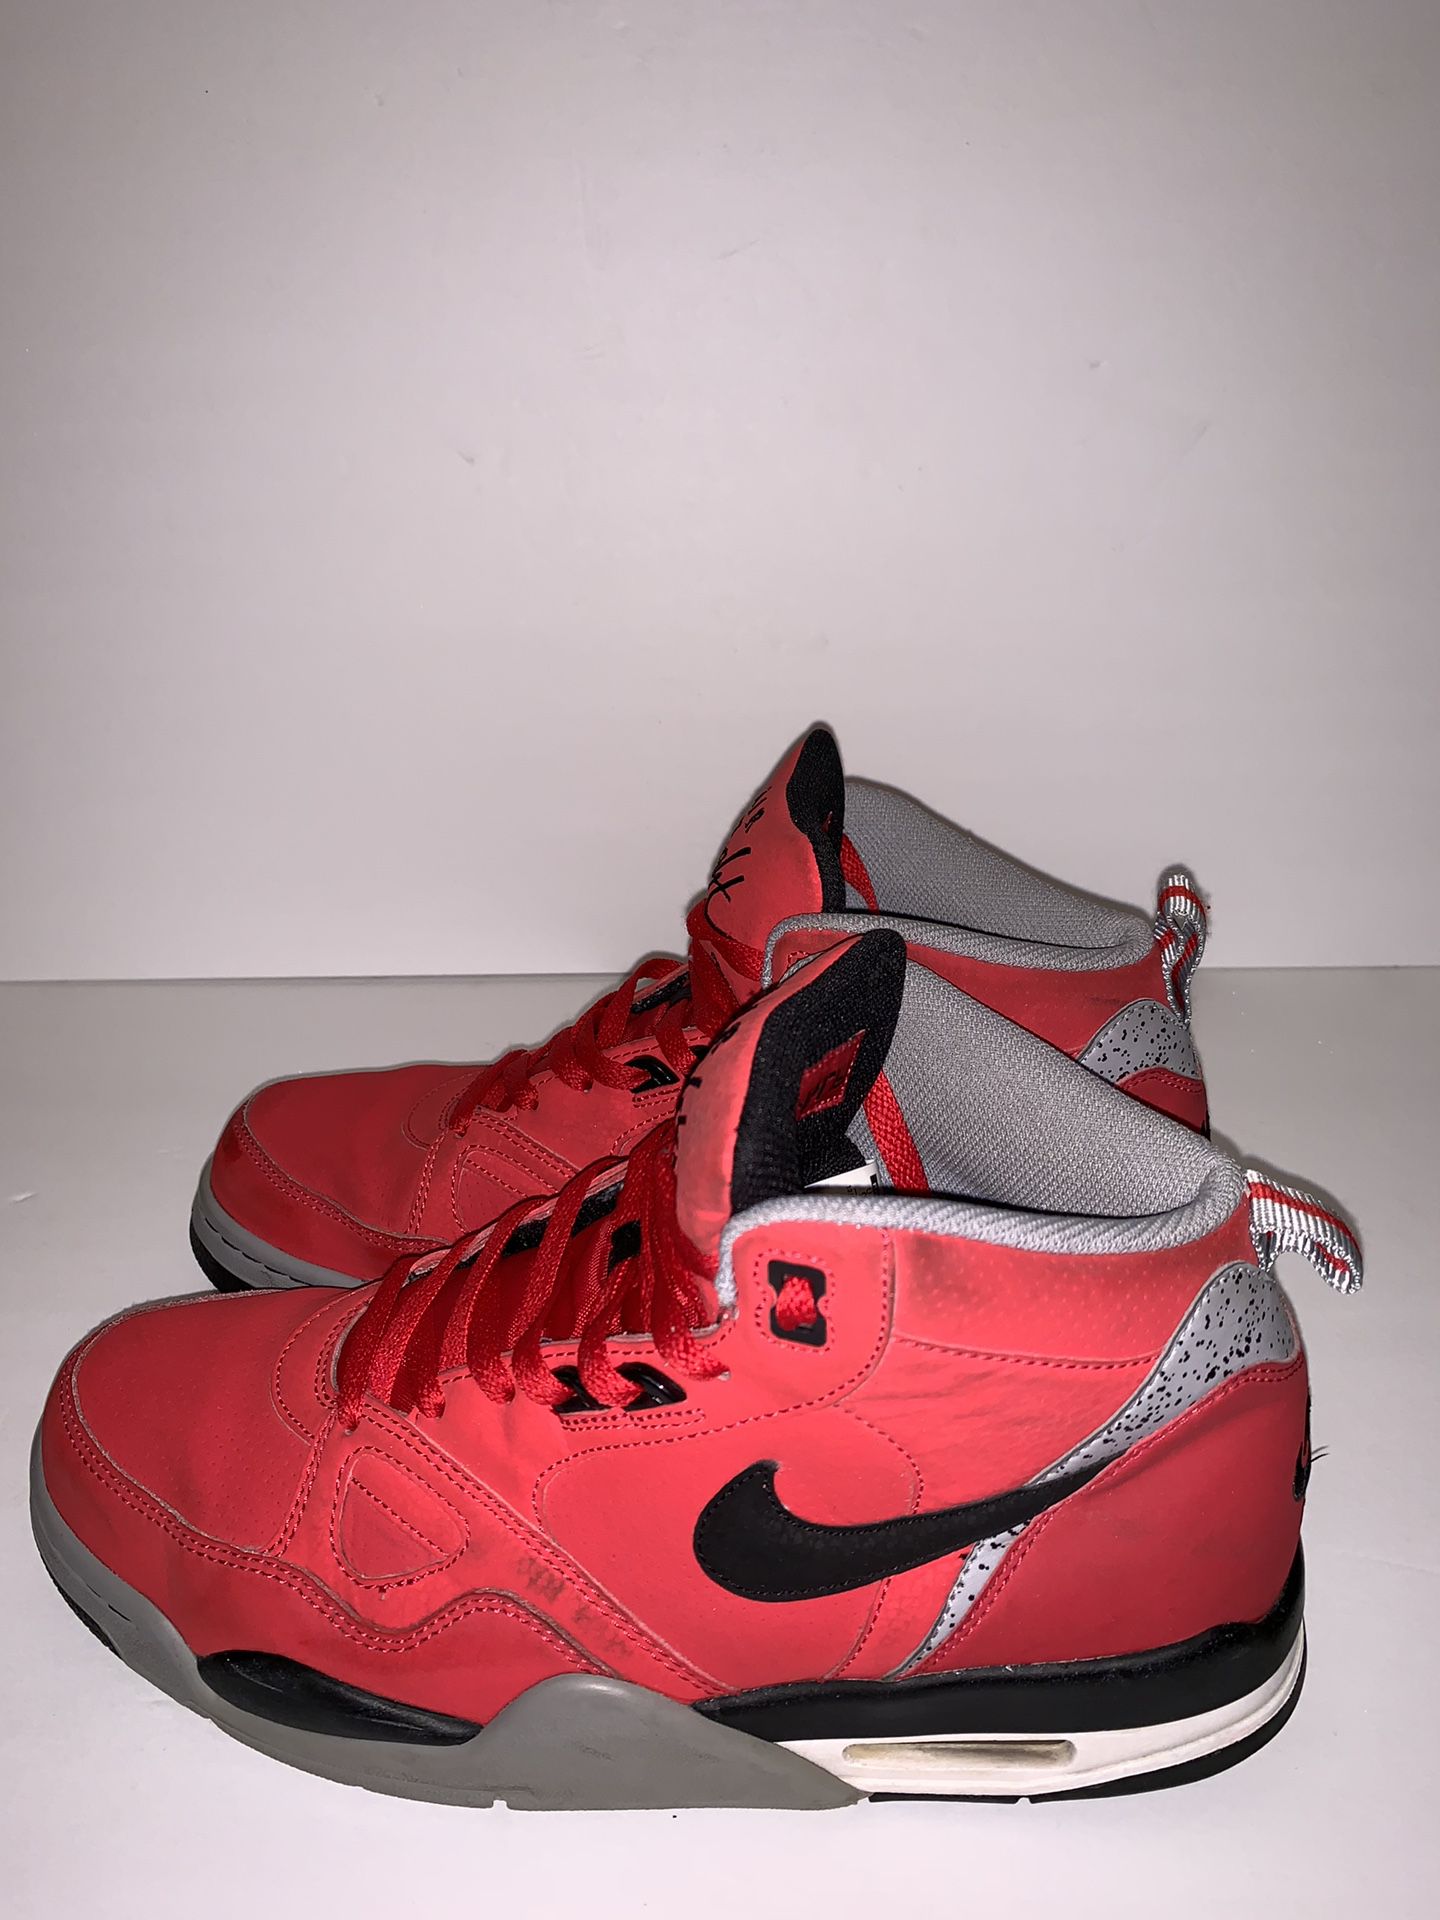 aantrekkelijk agitatie toevoegen Nike Flight 13 Mid Mens 579961 600 Red Size 9.5 for Sale in Los Angeles, CA  - OfferUp